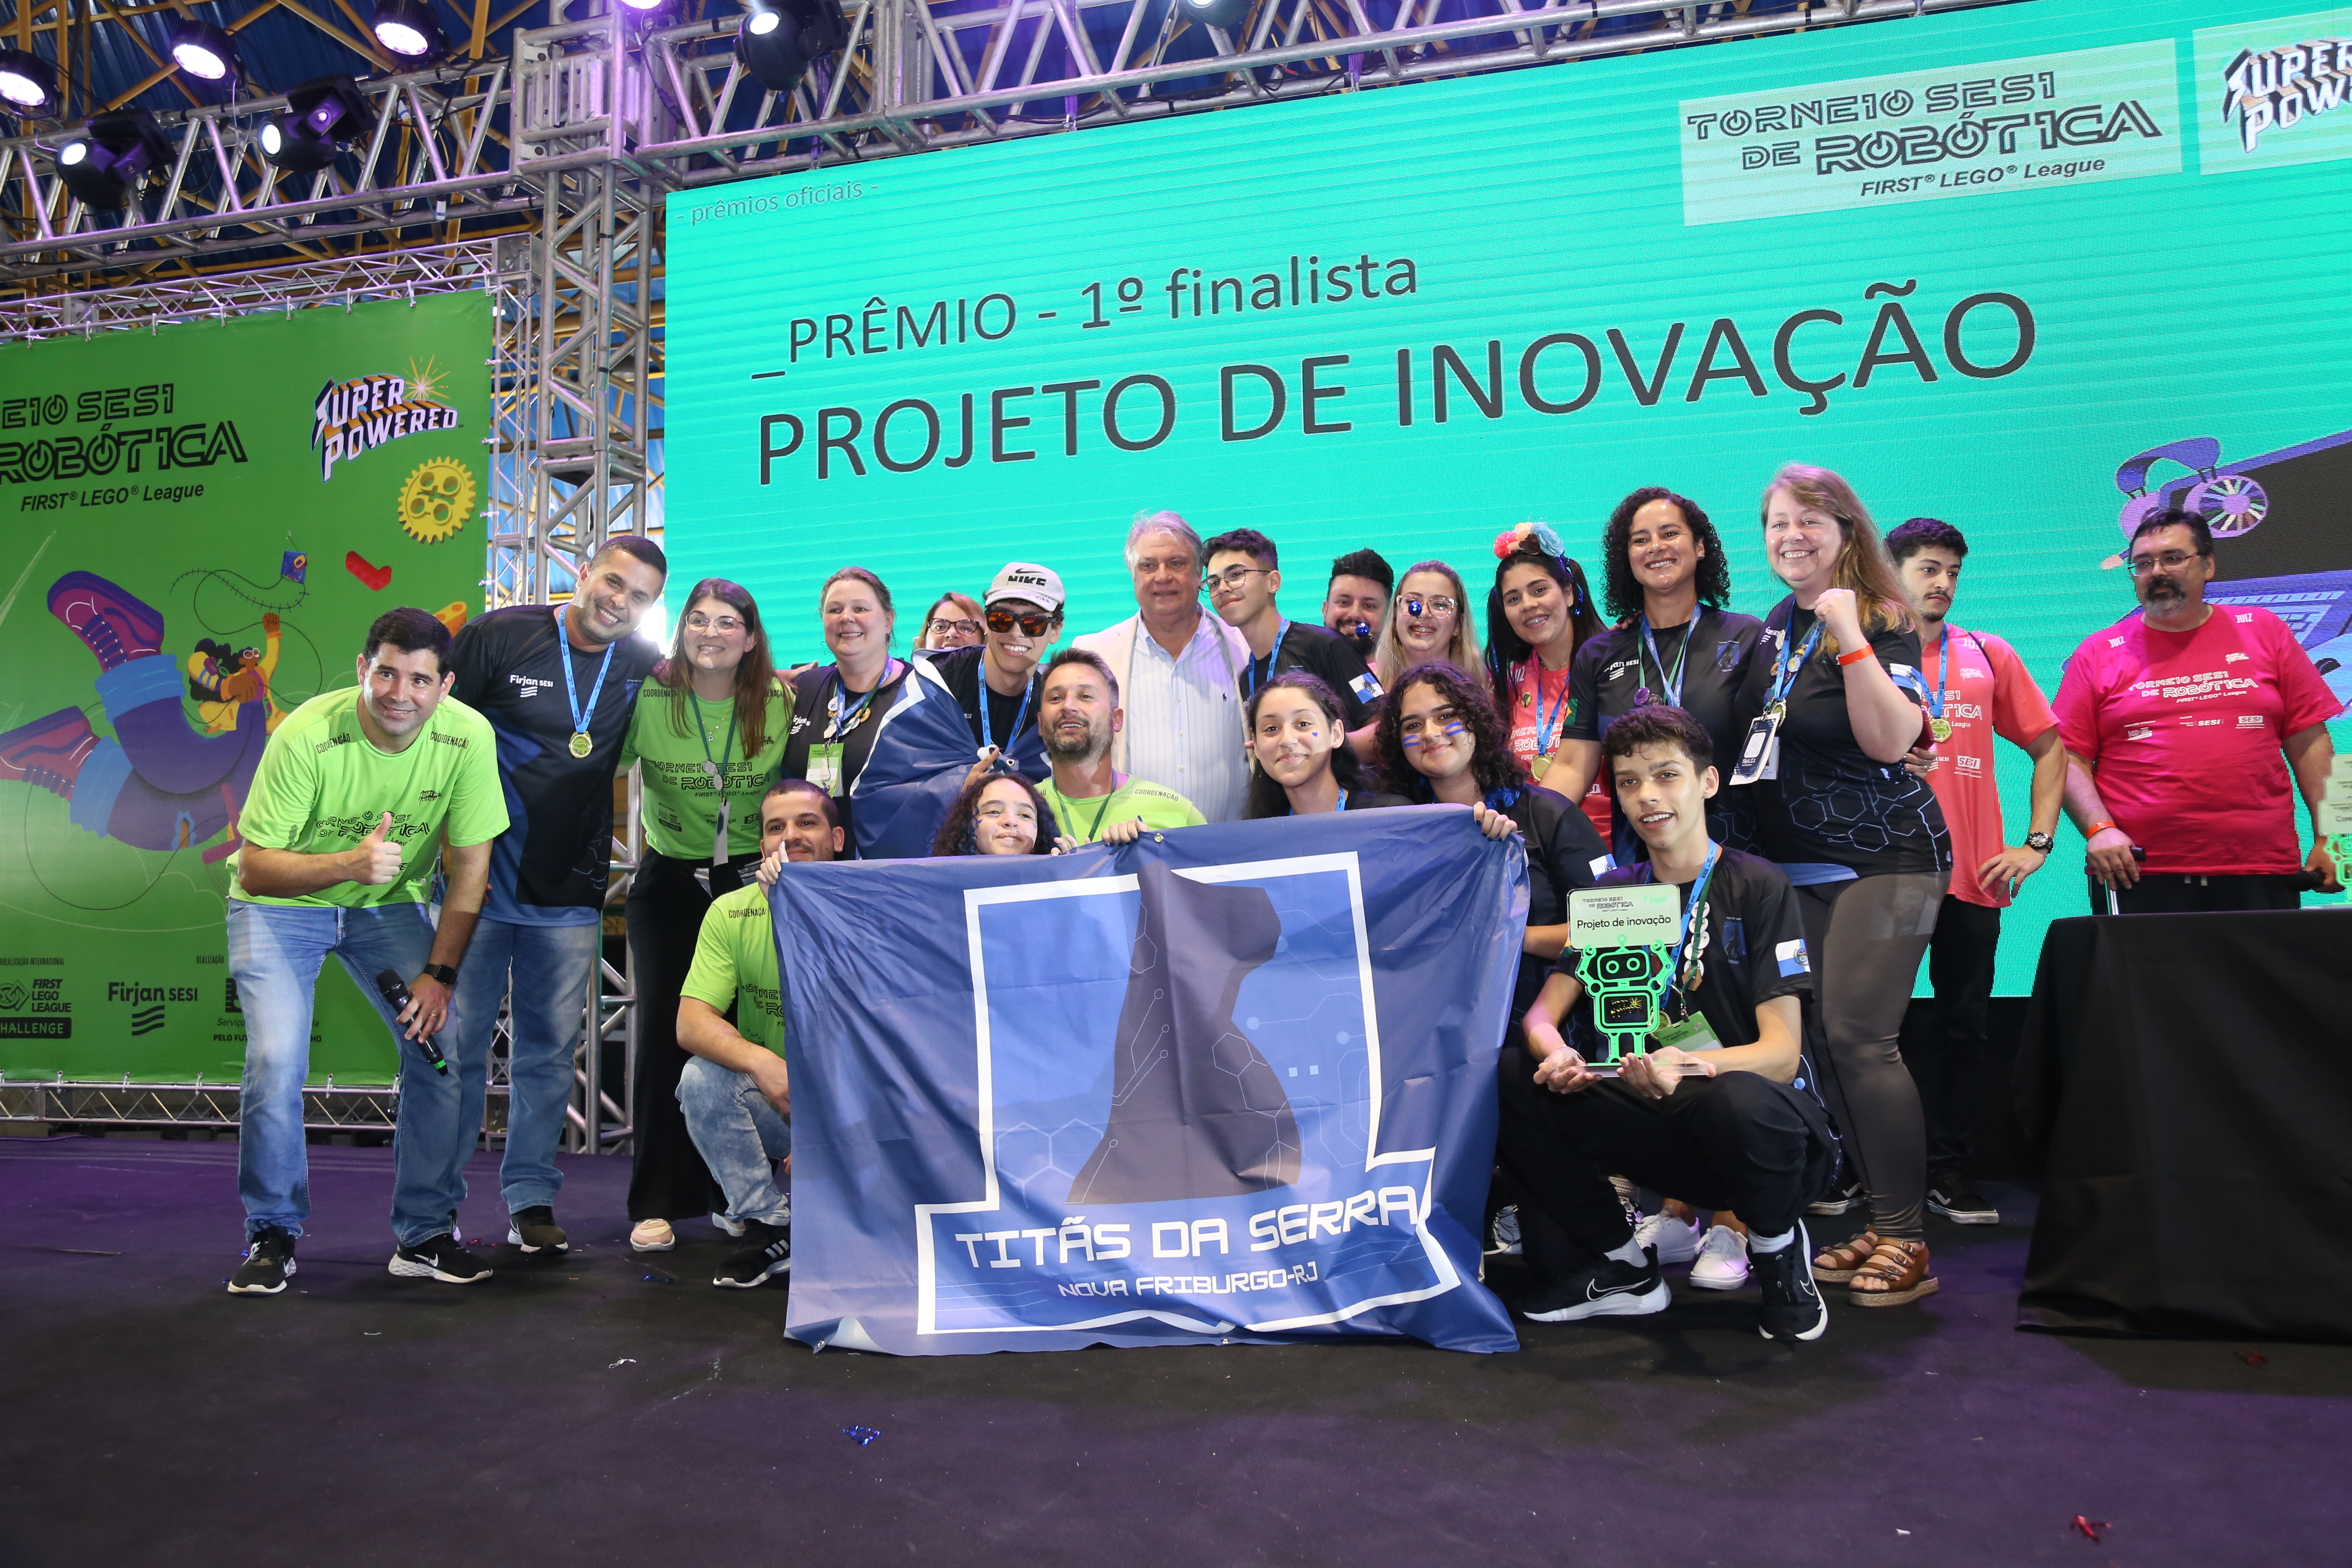 Equipe de Nova Friburgo, Titãs da Serra, vence Prêmio. (Foto: Divulgação)